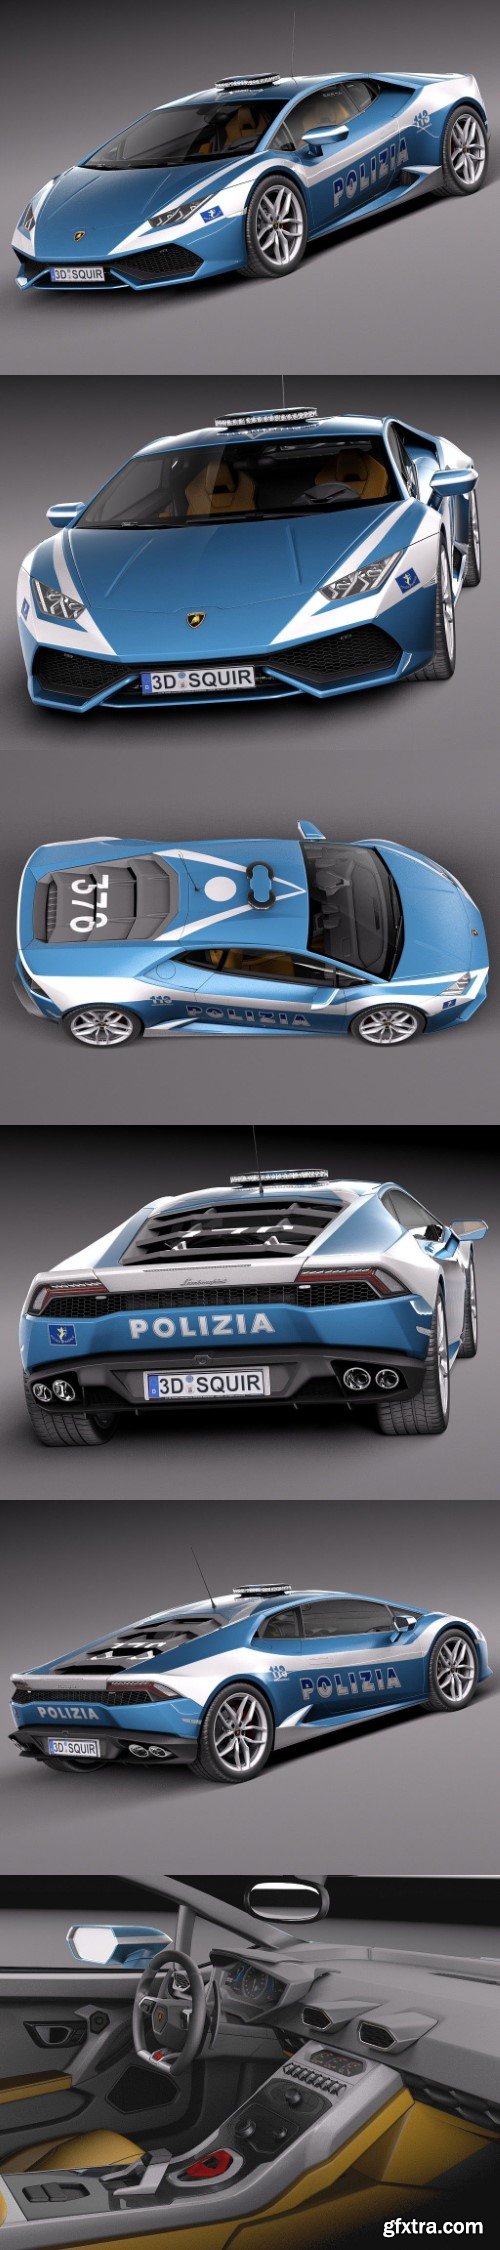 Lamborghini Huracan 2015 Italian Police Car 3d model